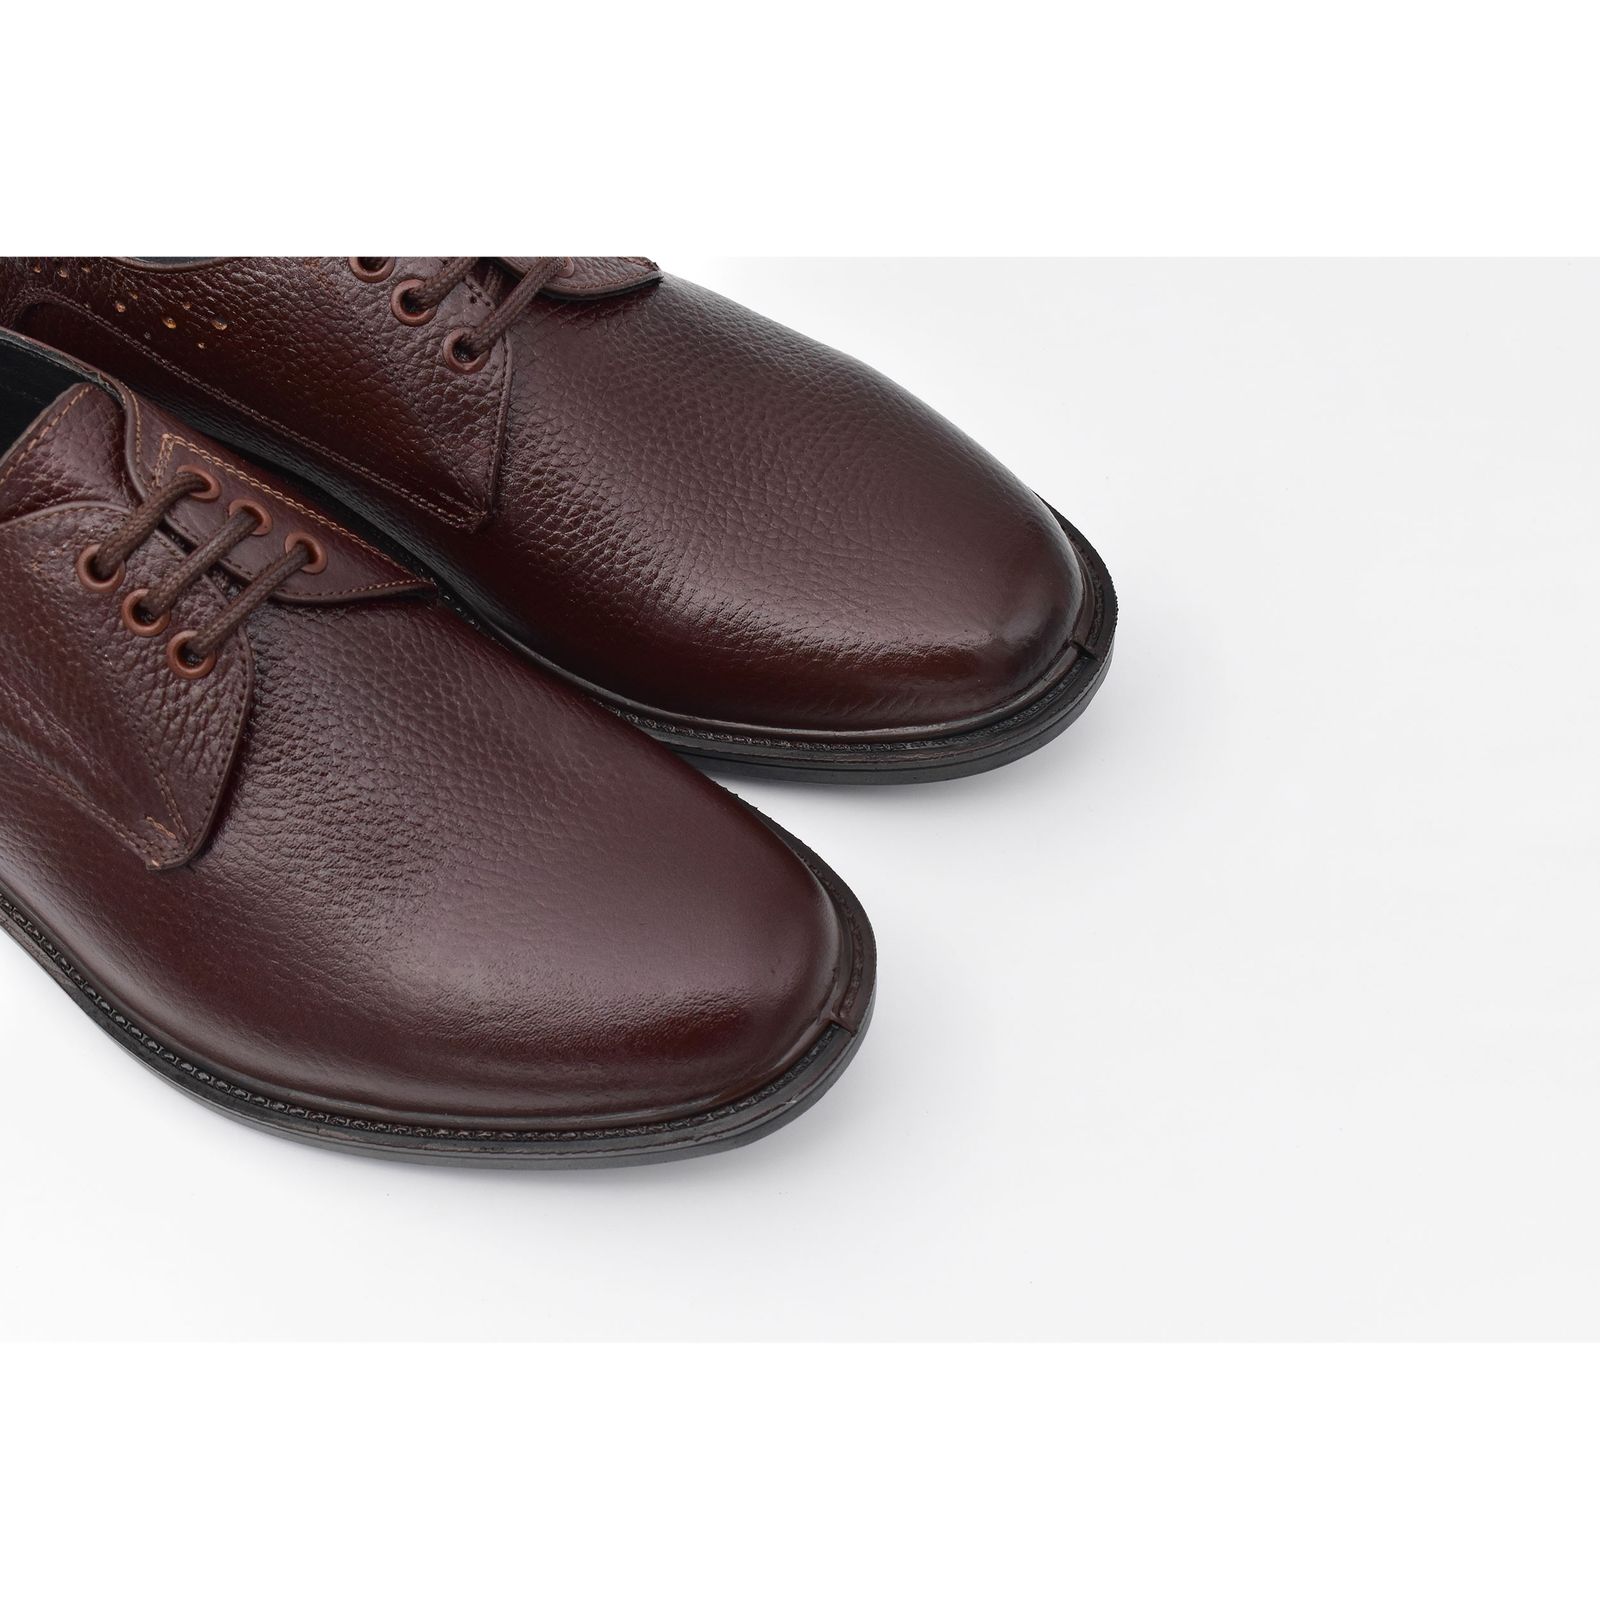 کفش مردانه پاما مدل Malavan کد G1179 -  - 3